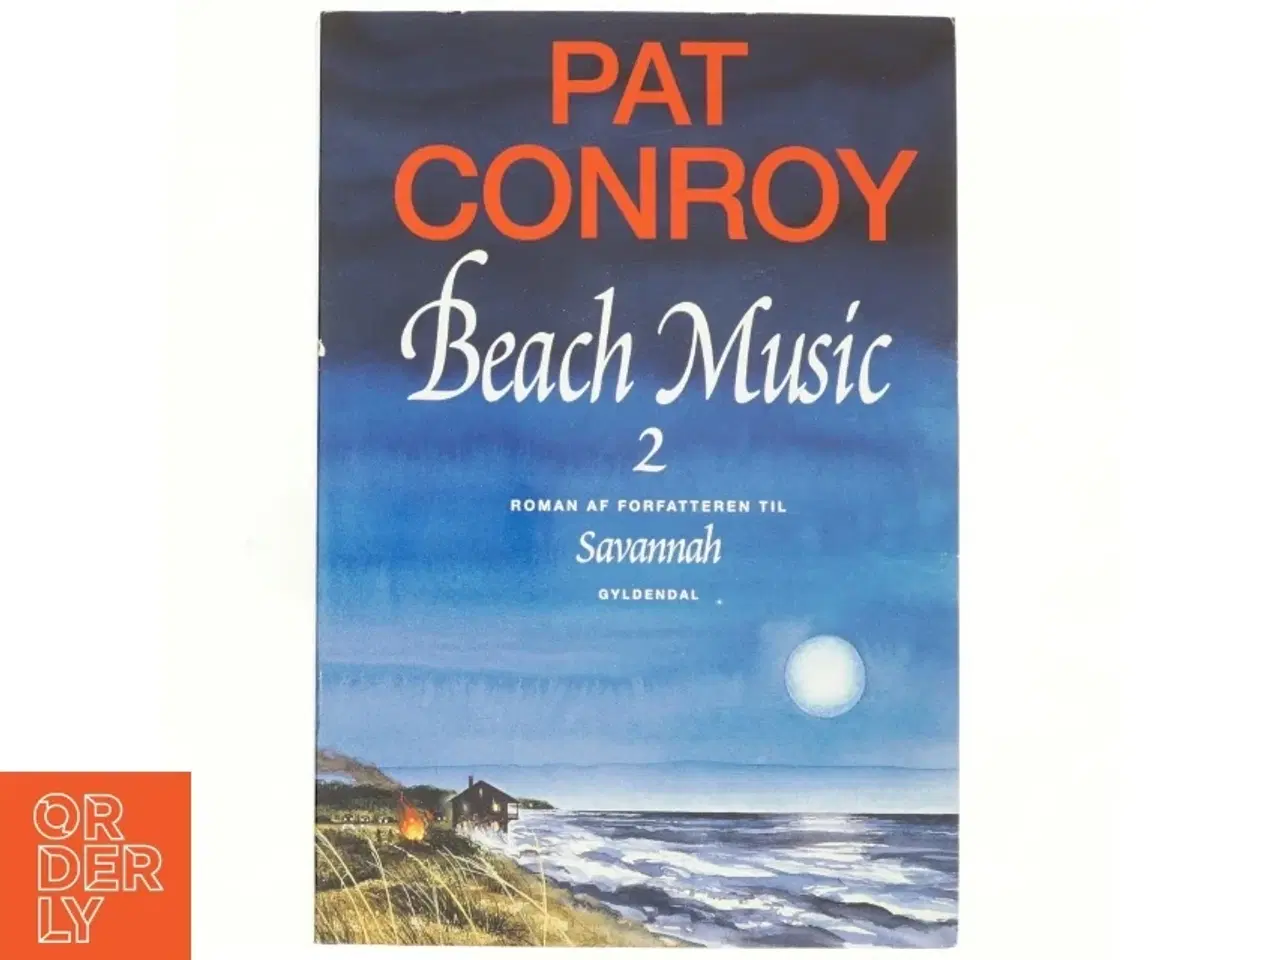 Billede 1 - Beach music 2 af Pat Conroy (Bog)